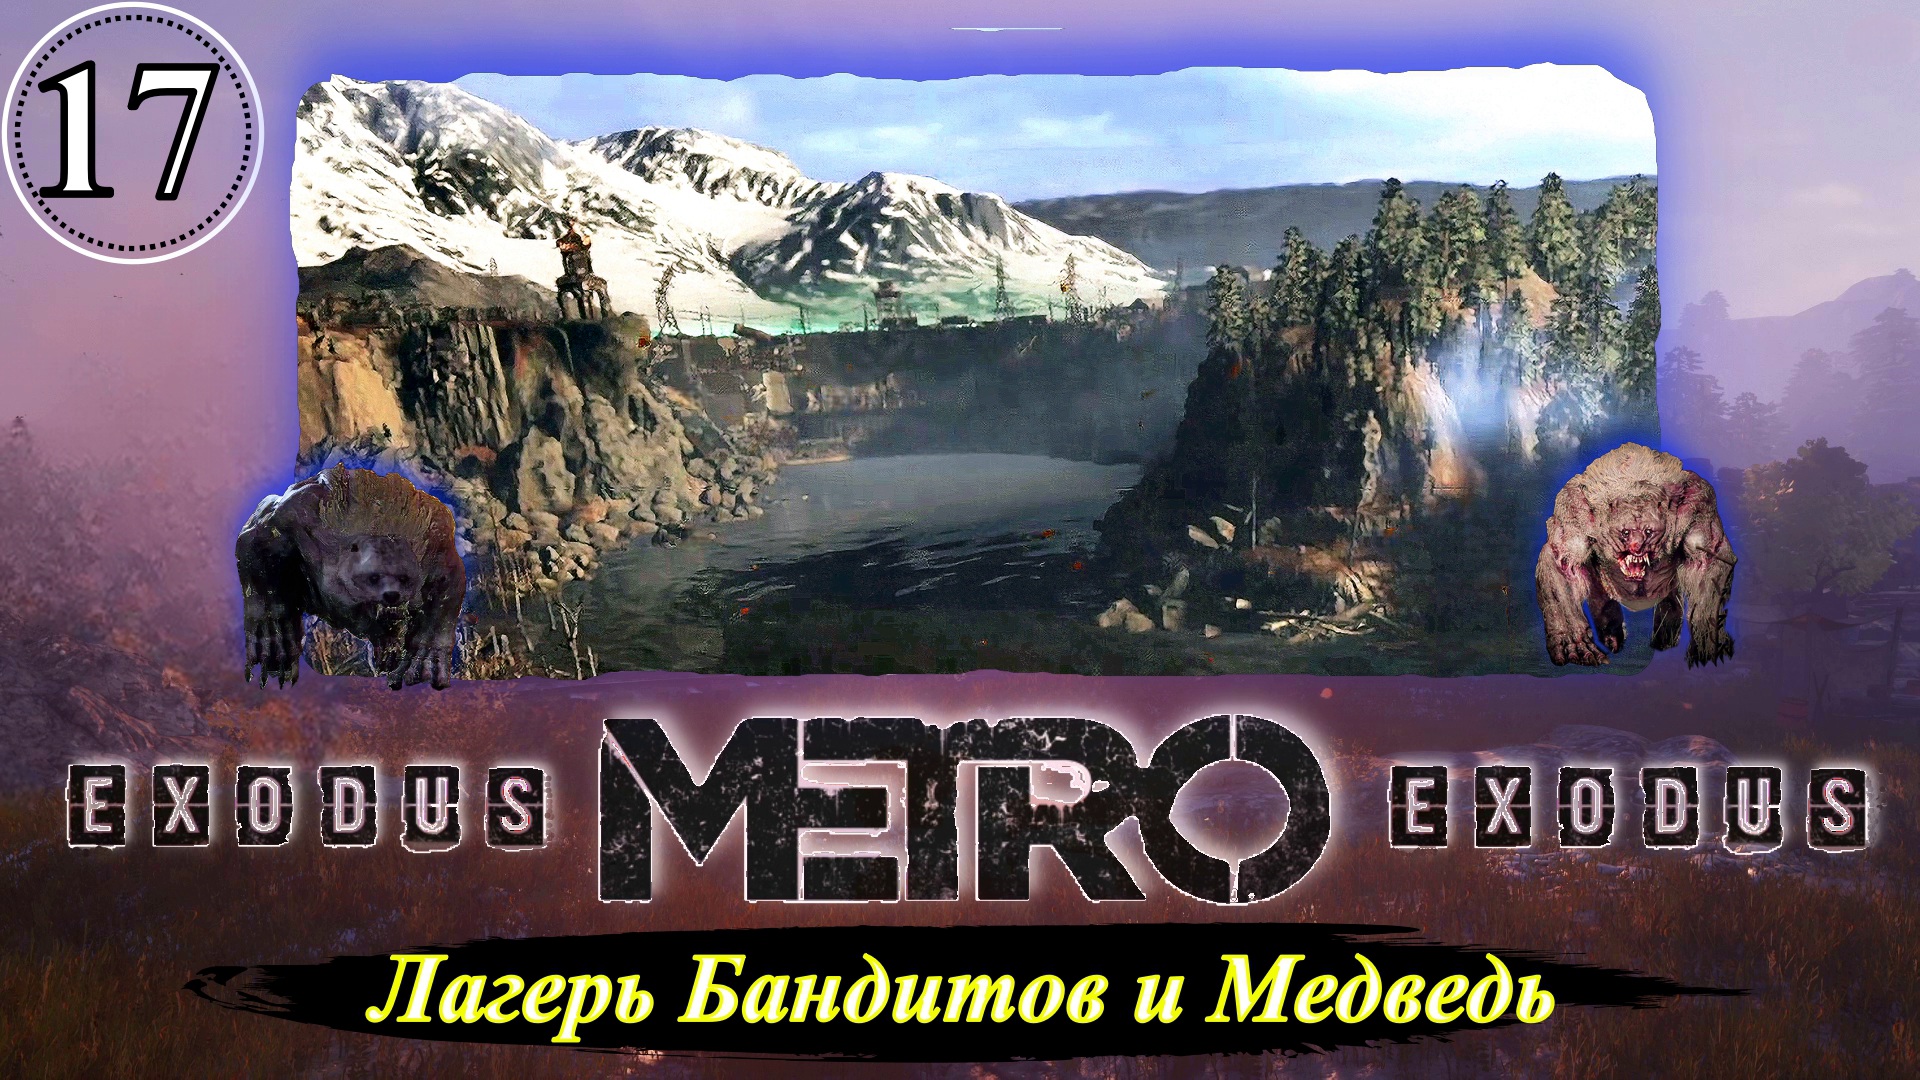 Metro Exodus Лагерь Бандитов и Медведь - Прохождение. Часть 17.mp4